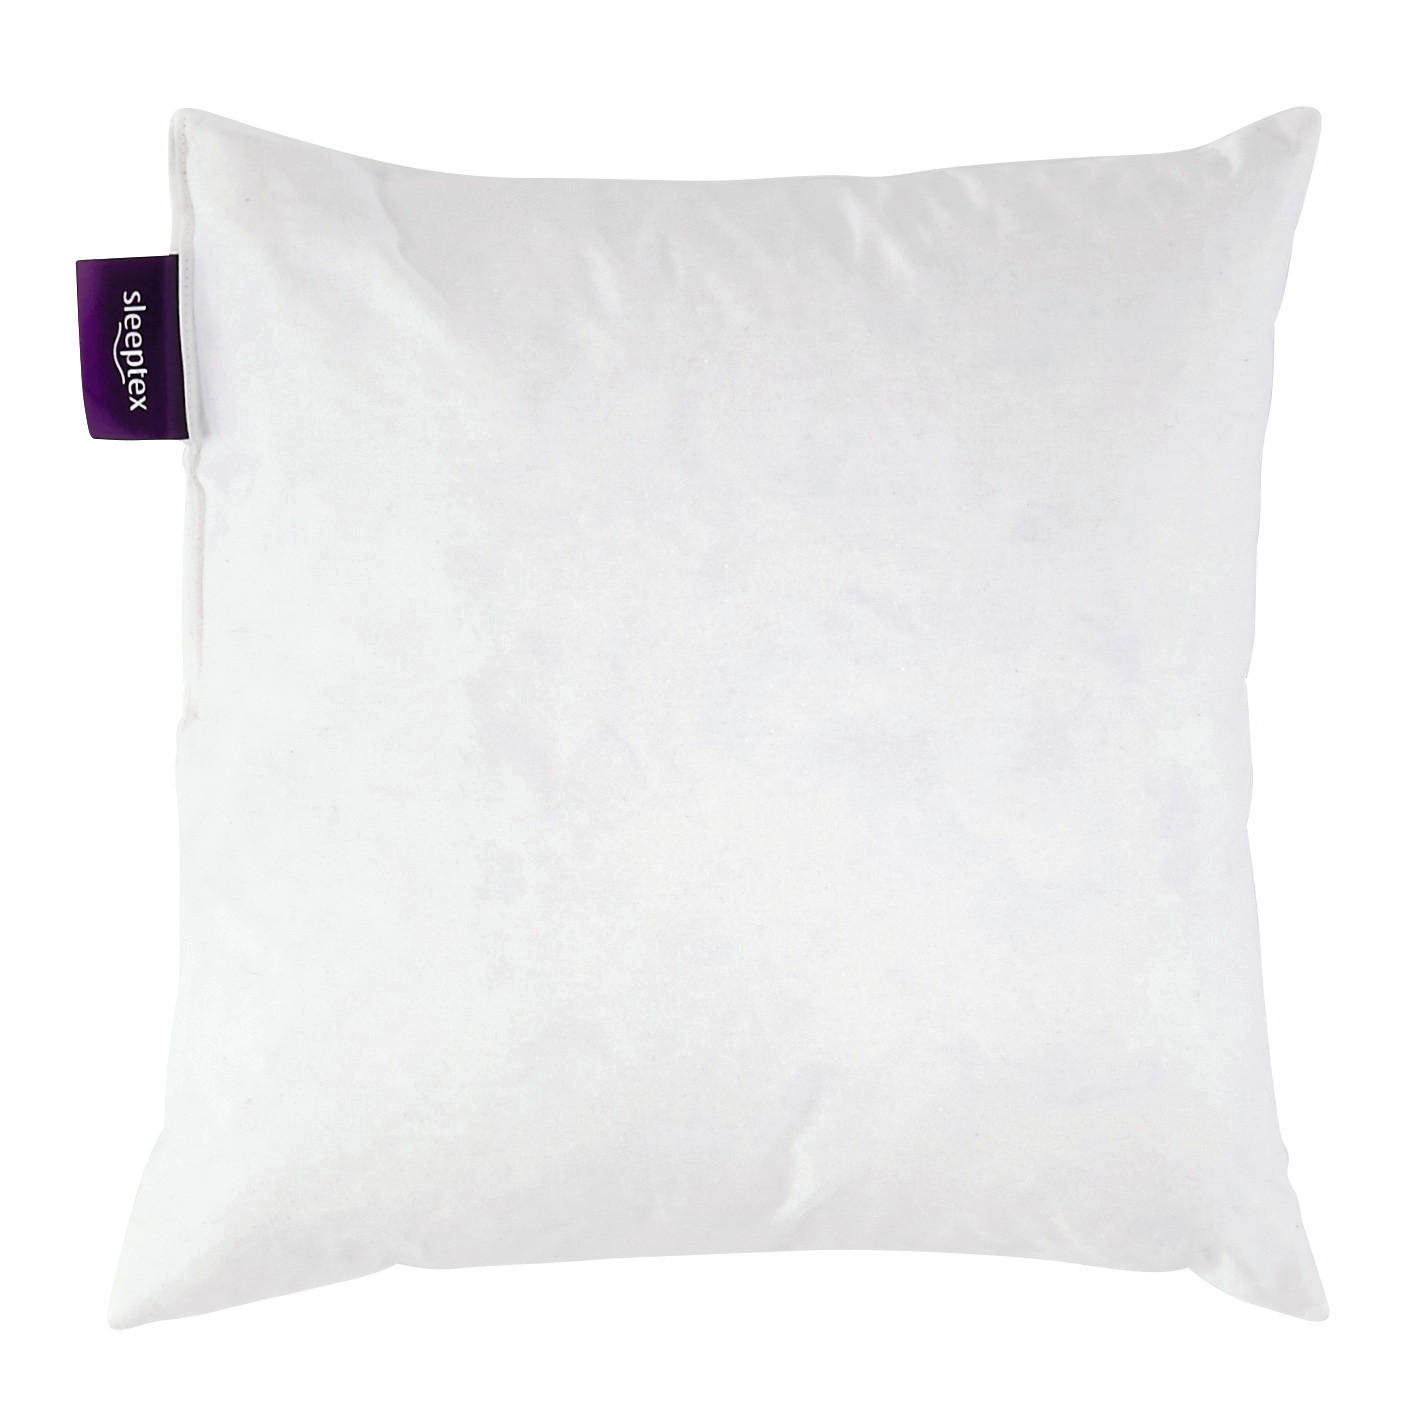 FÜLLKISSEN  - Weiß, Basics, Textil (50/50cm) - Sleeptex